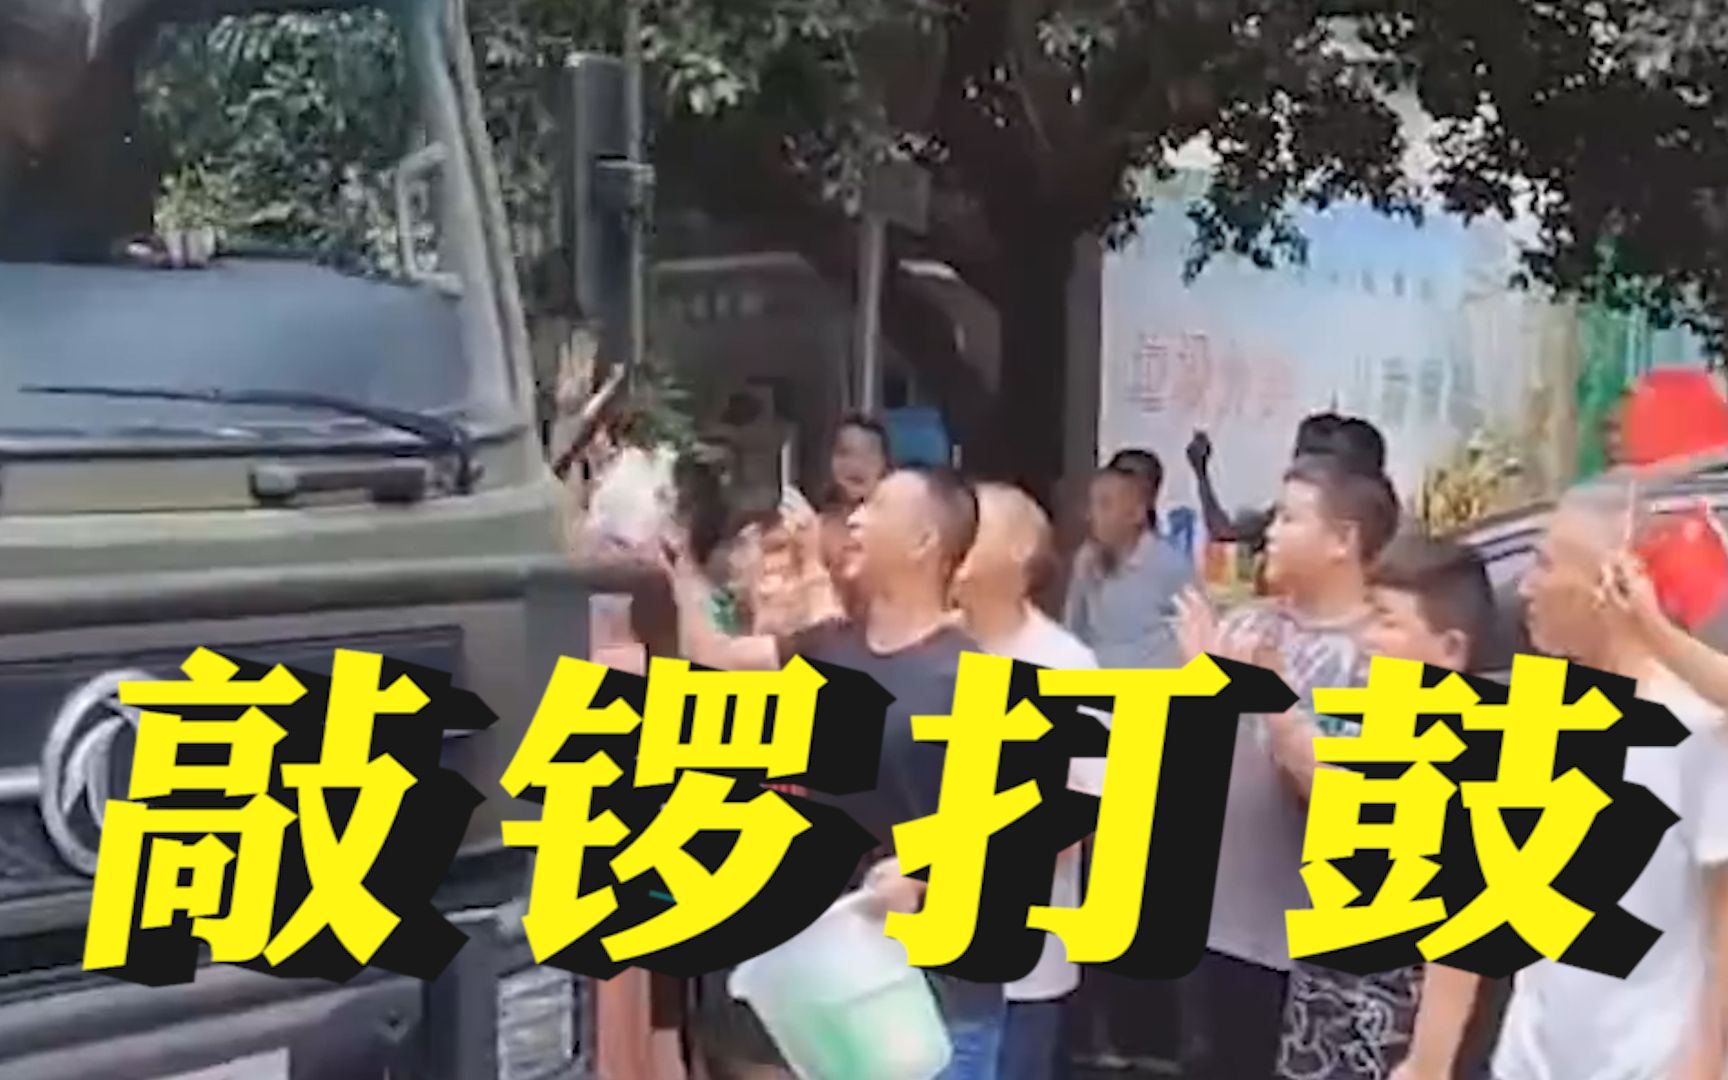 重庆群众欢送武警官兵 现场敲锣打鼓 不断有人向车队扔补给品